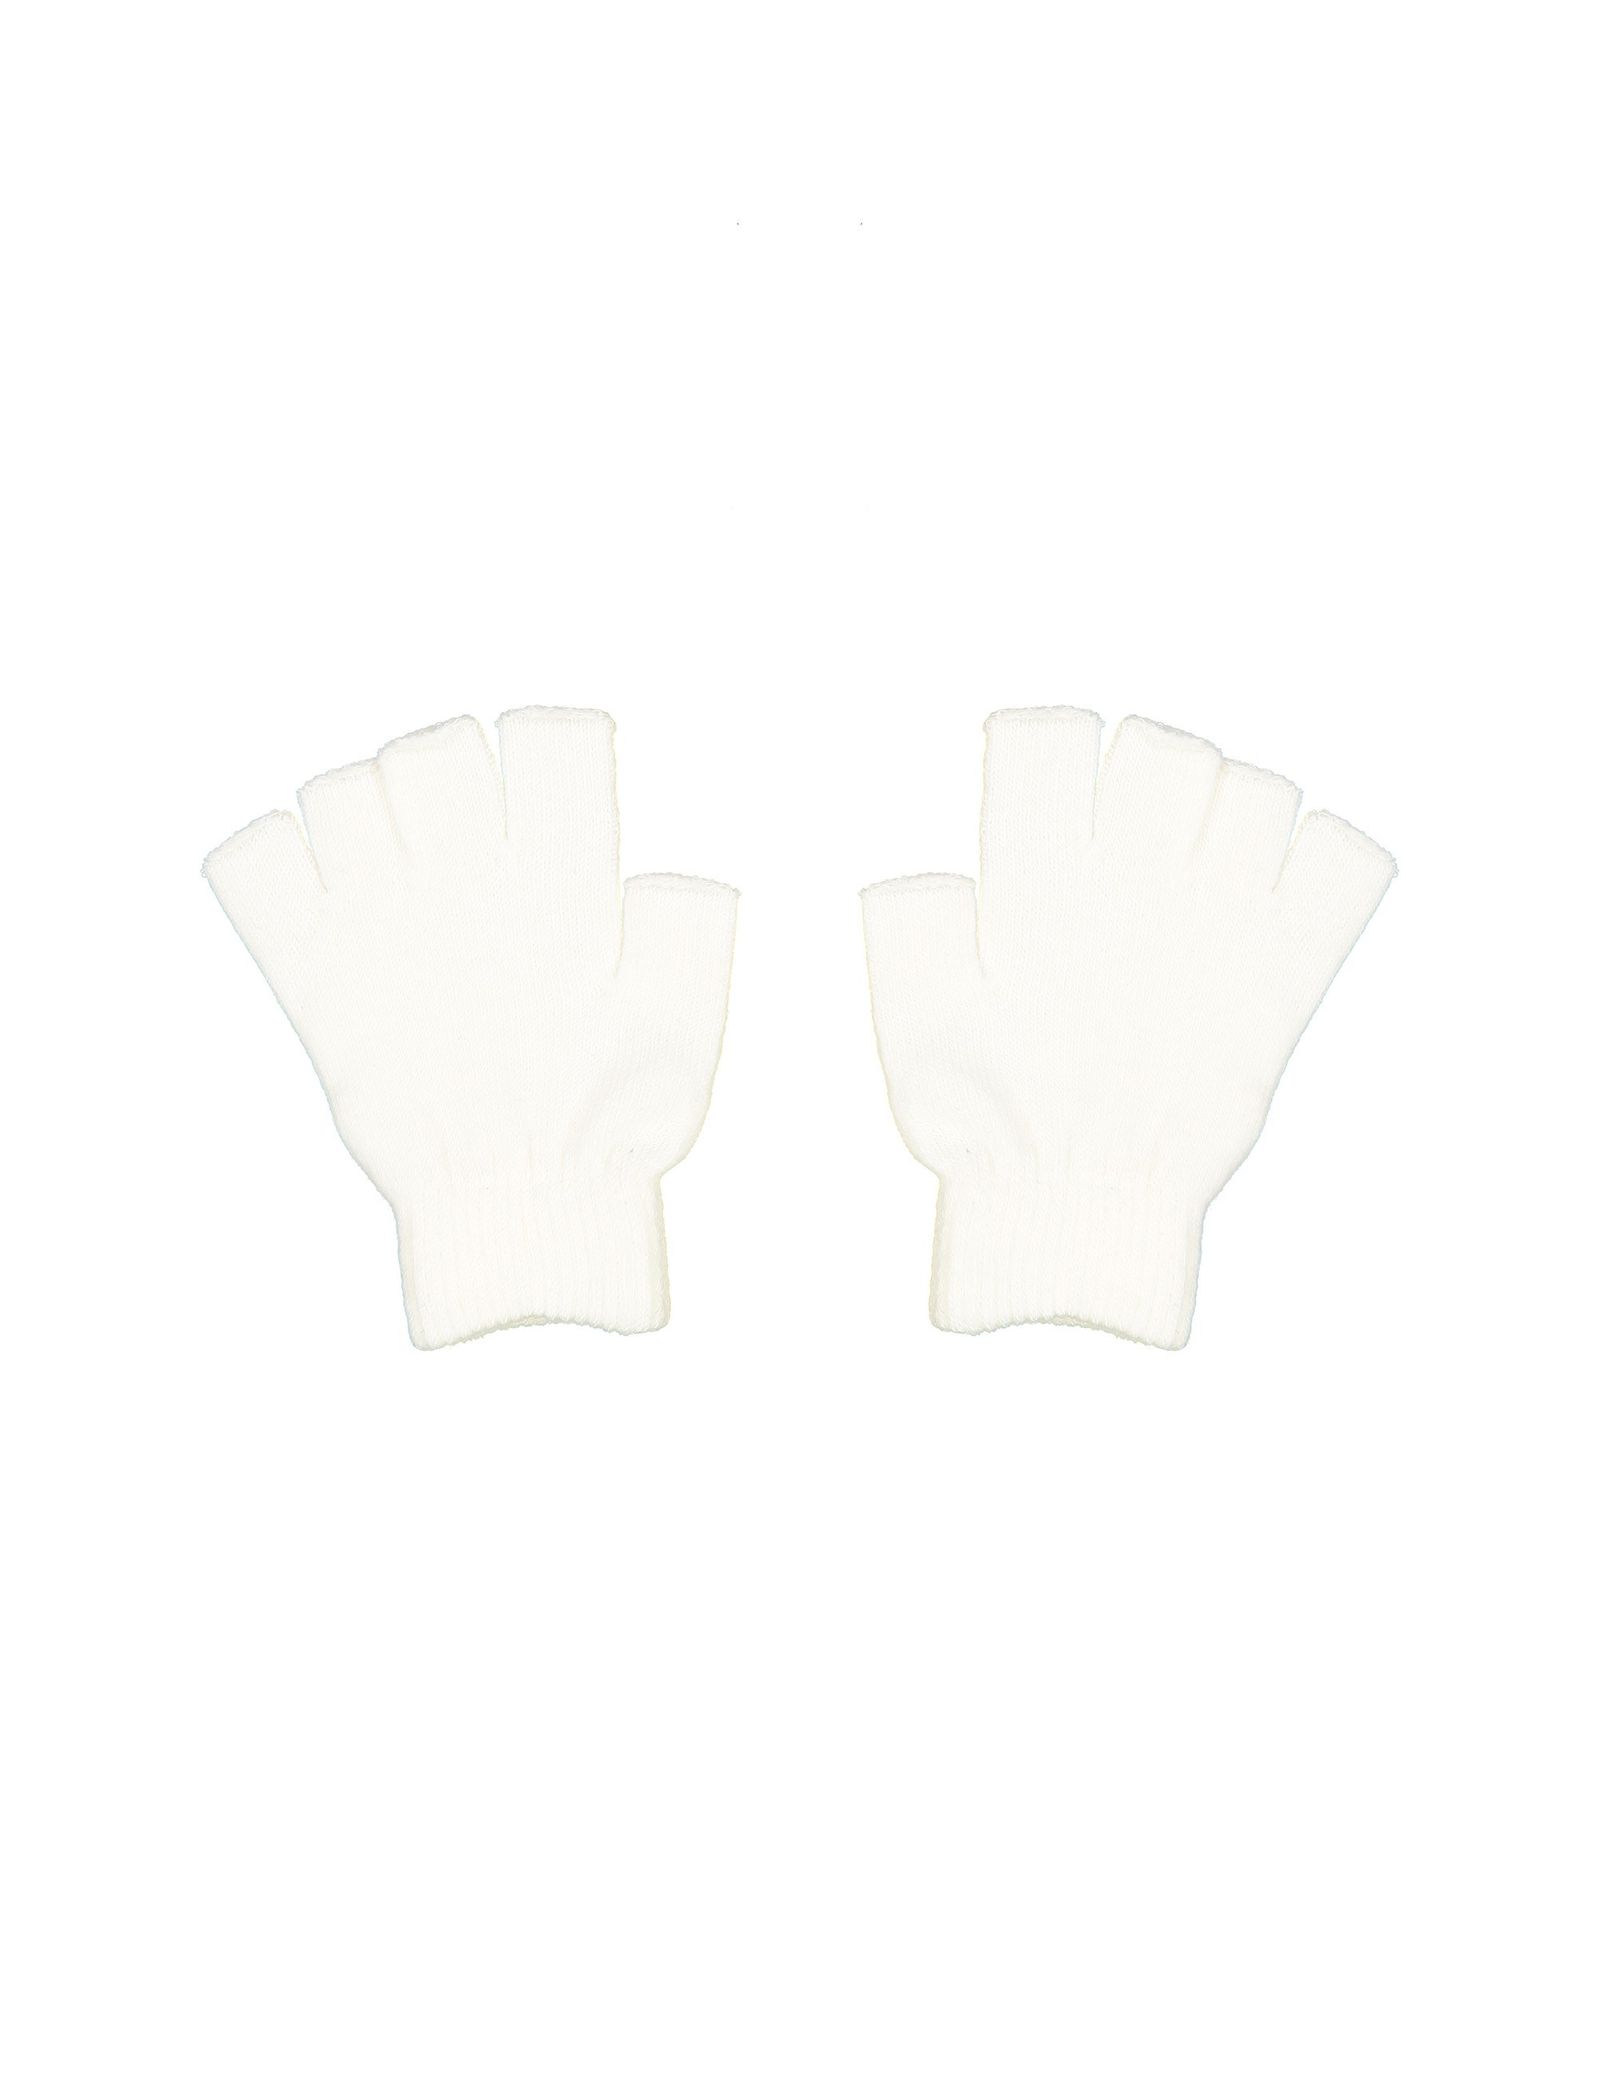 دستکش بدون انگشت زنانه بسته 2 عددی - جنیفر - سفيد و مشکي - 4